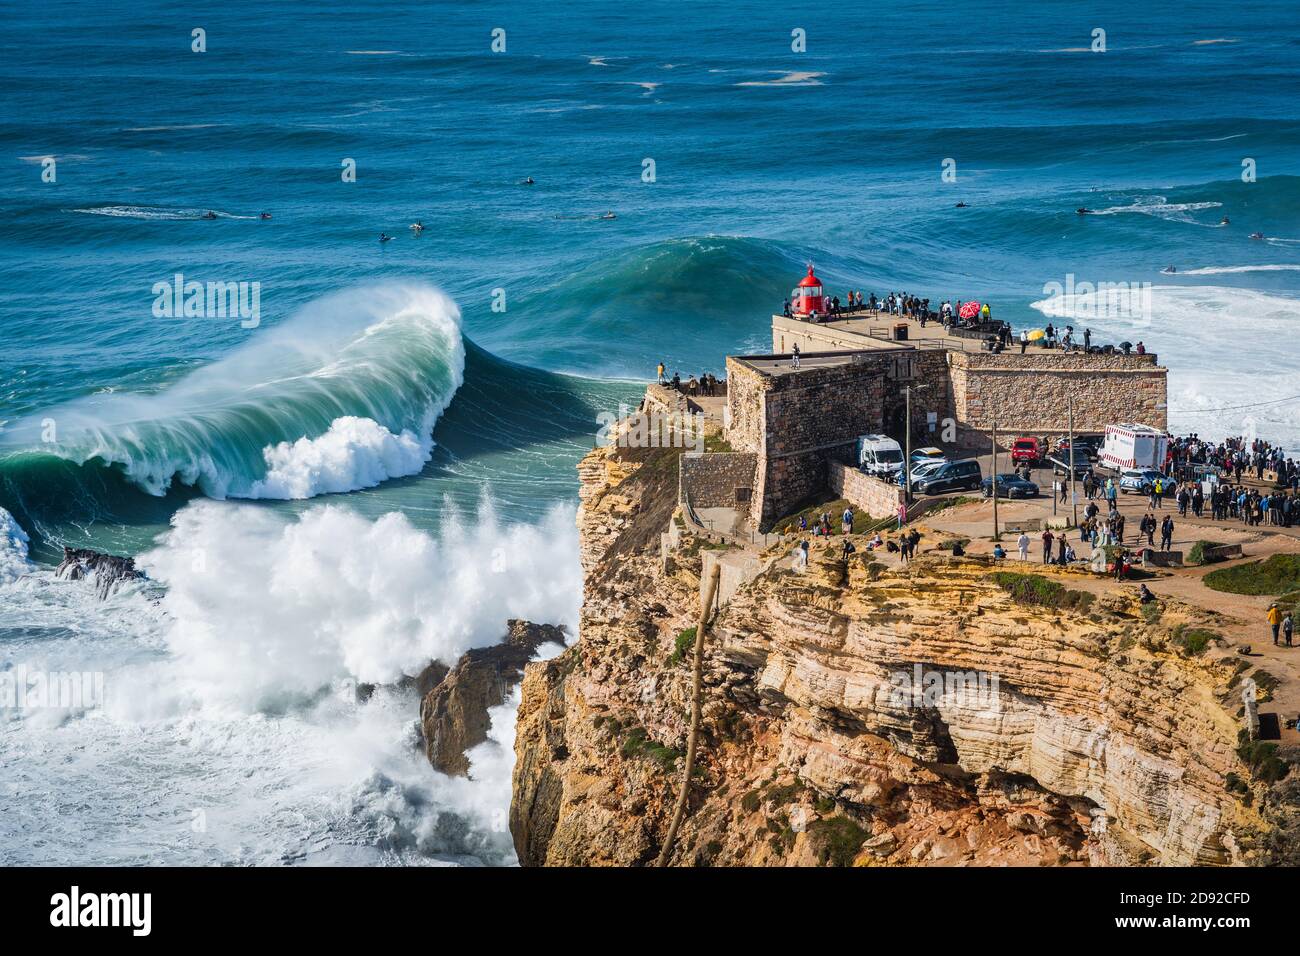 Grandi onde che si infrangono vicino al Faro di Nazare a Nazare, Portogallo. Nazare è famosa per avere le onde più grandi del mondo. Foto Stock